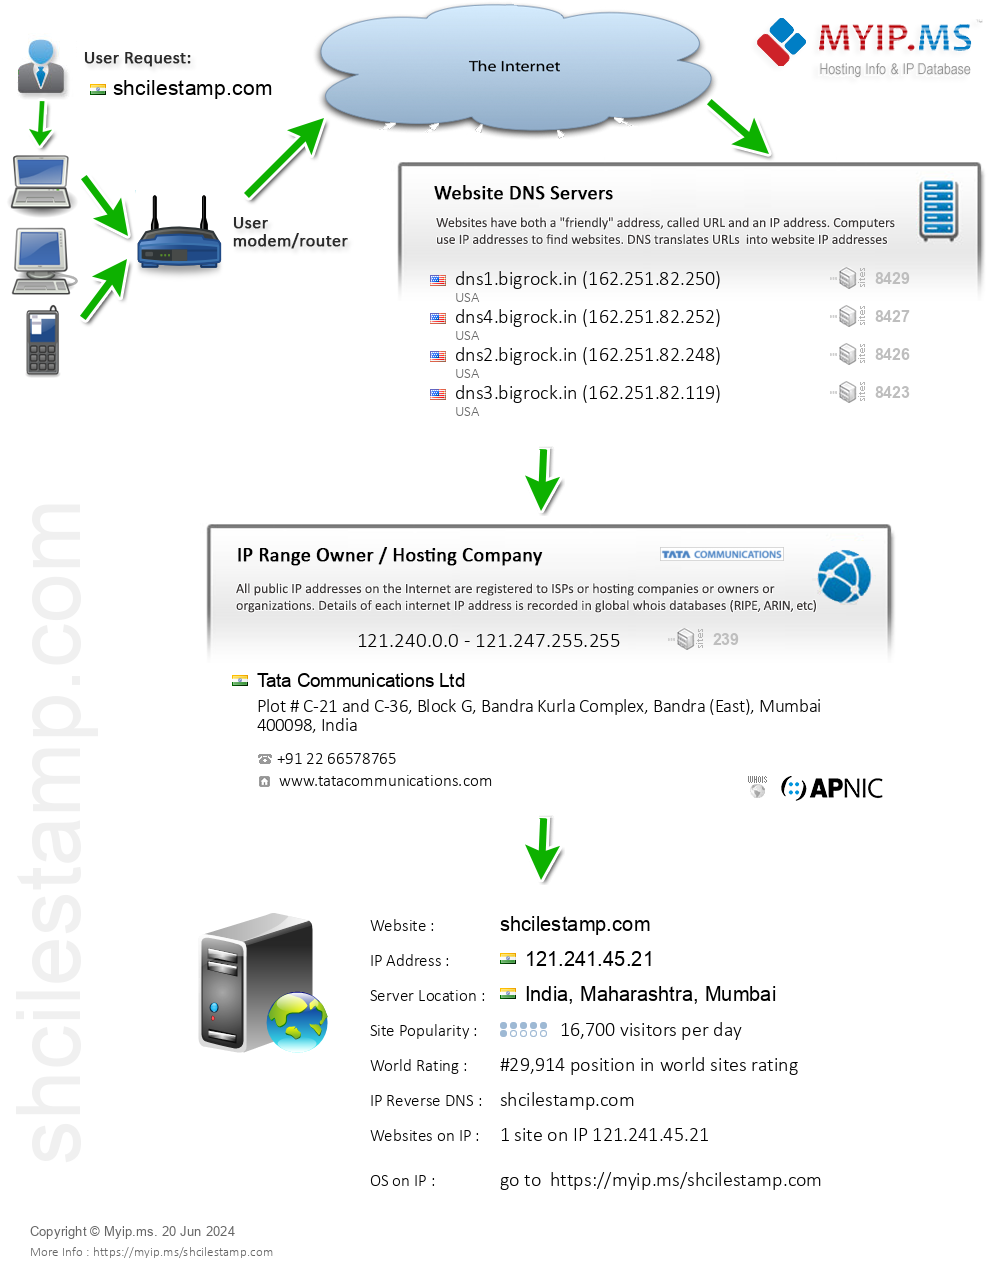 Shcilestamp.com - Website Hosting Visual IP Diagram